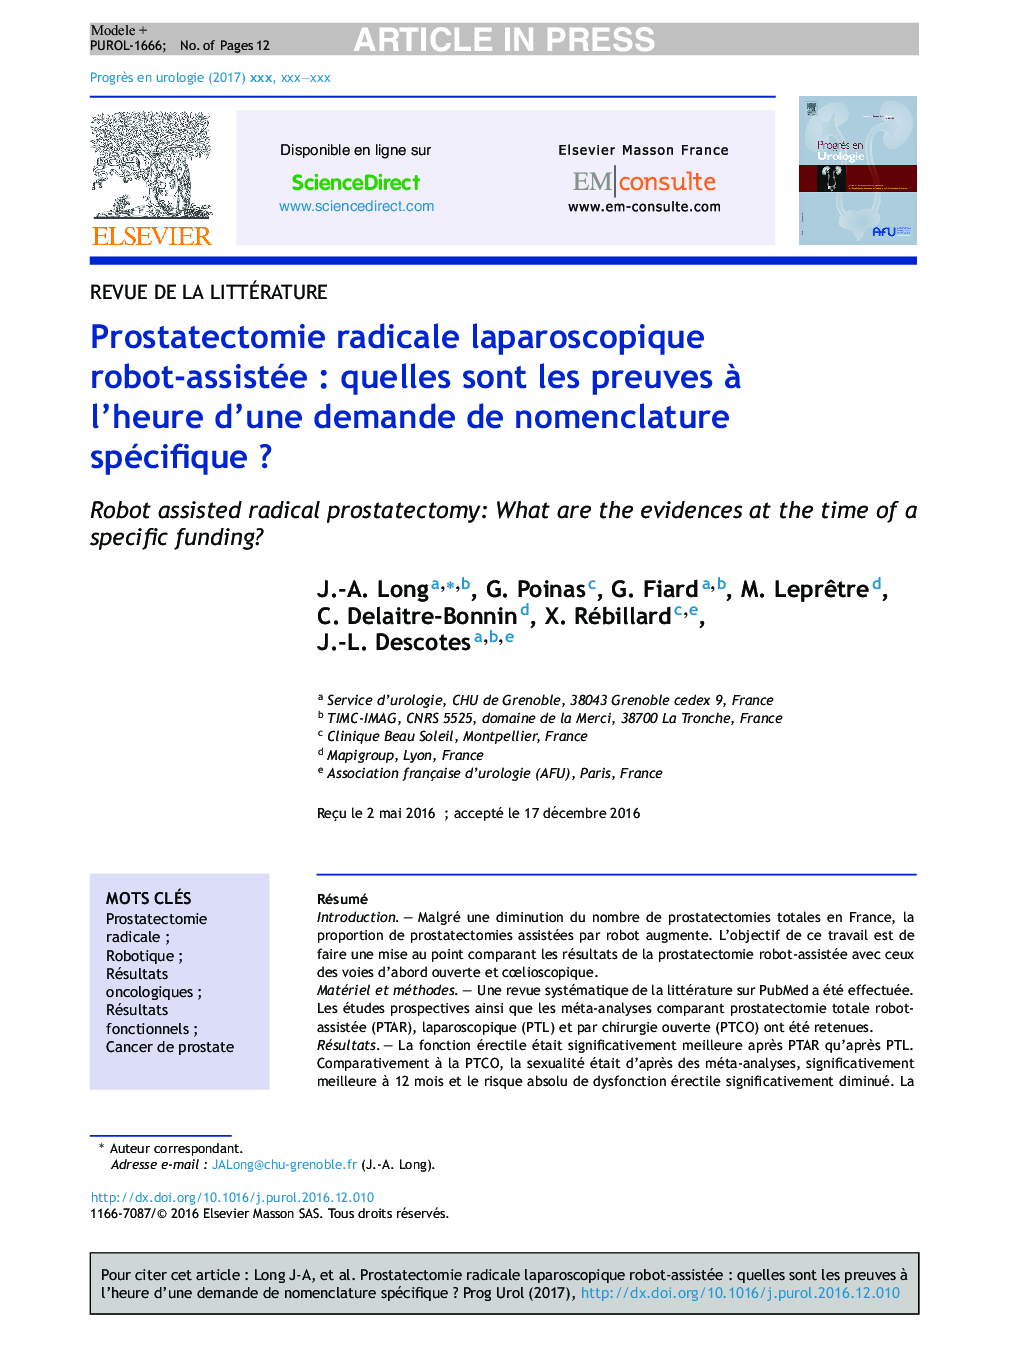 Prostatectomie radicale laparoscopique robot-assistéeÂ : quelles sont les preuves Ã  l'heure d'une demande de nomenclature spécifiqueÂ ?